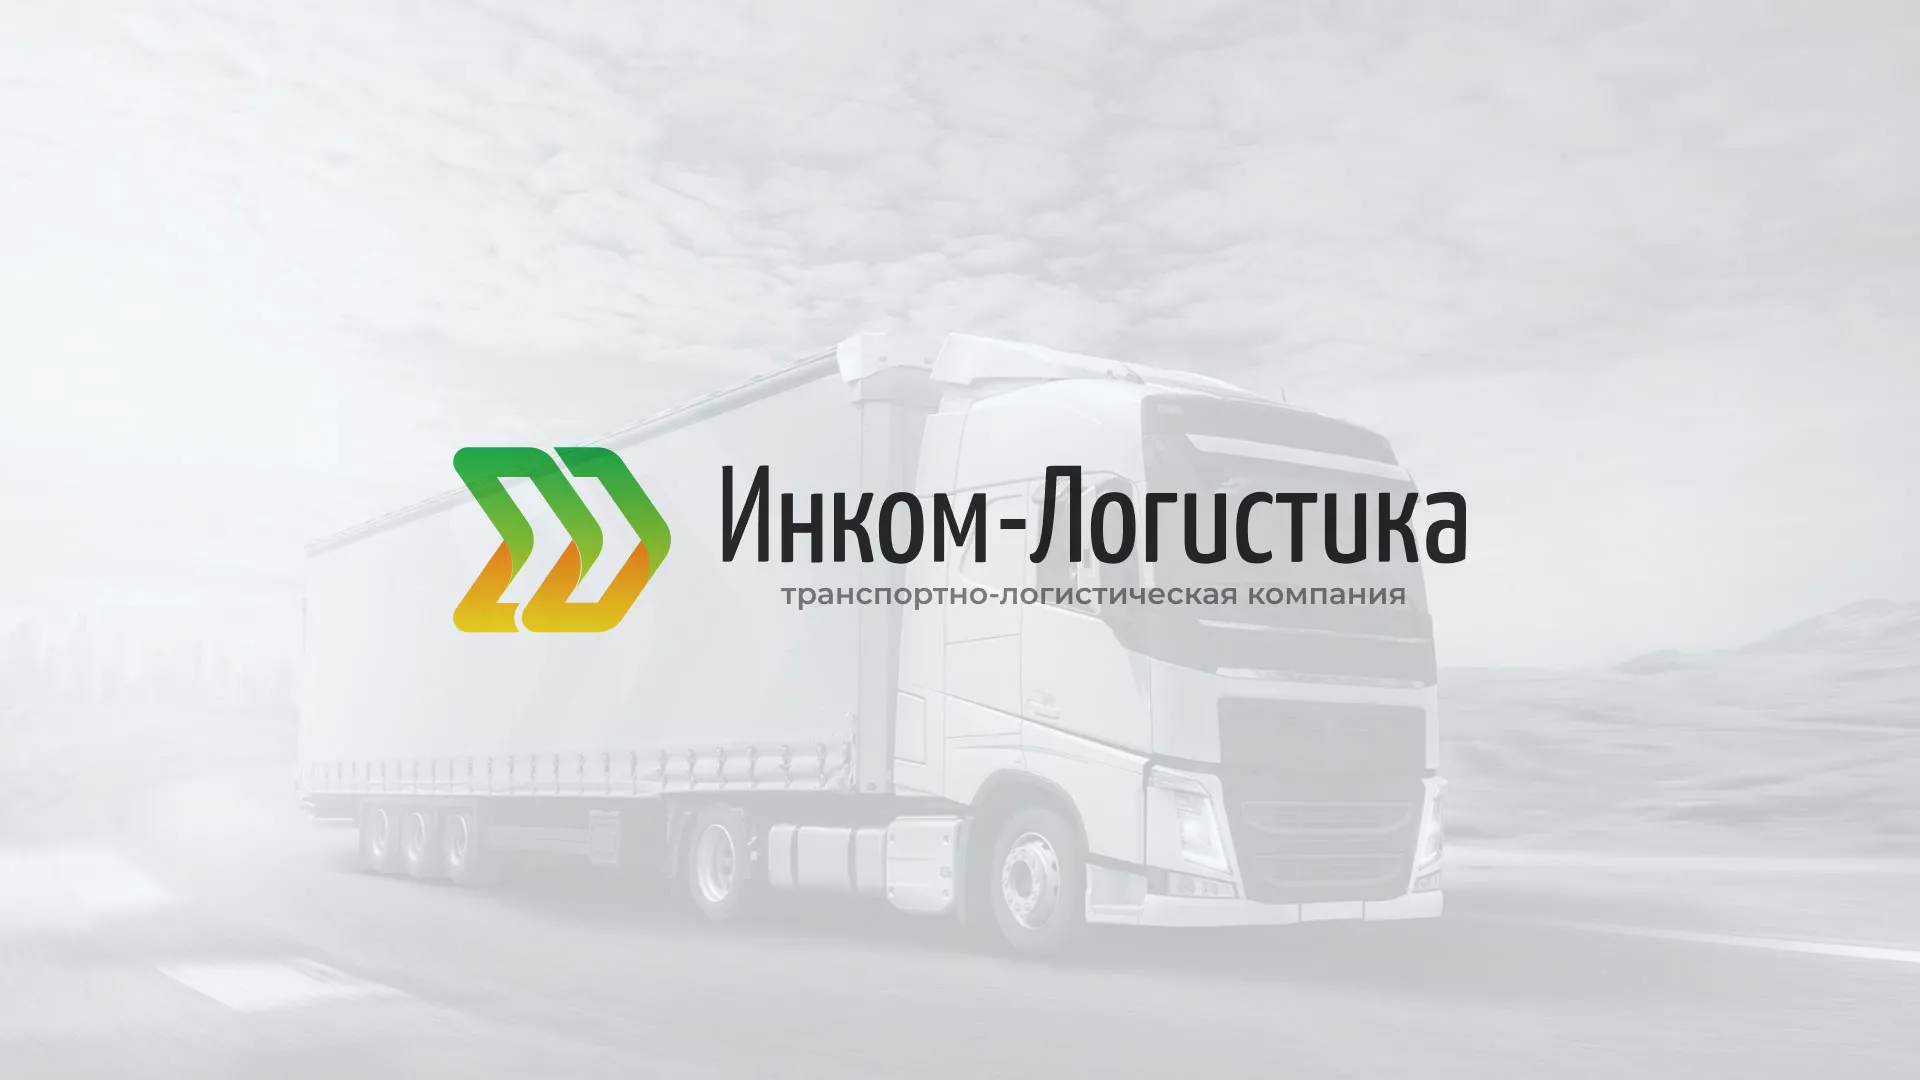 Разработка логотипа и сайта компании «Инком-Логистика» в Перми